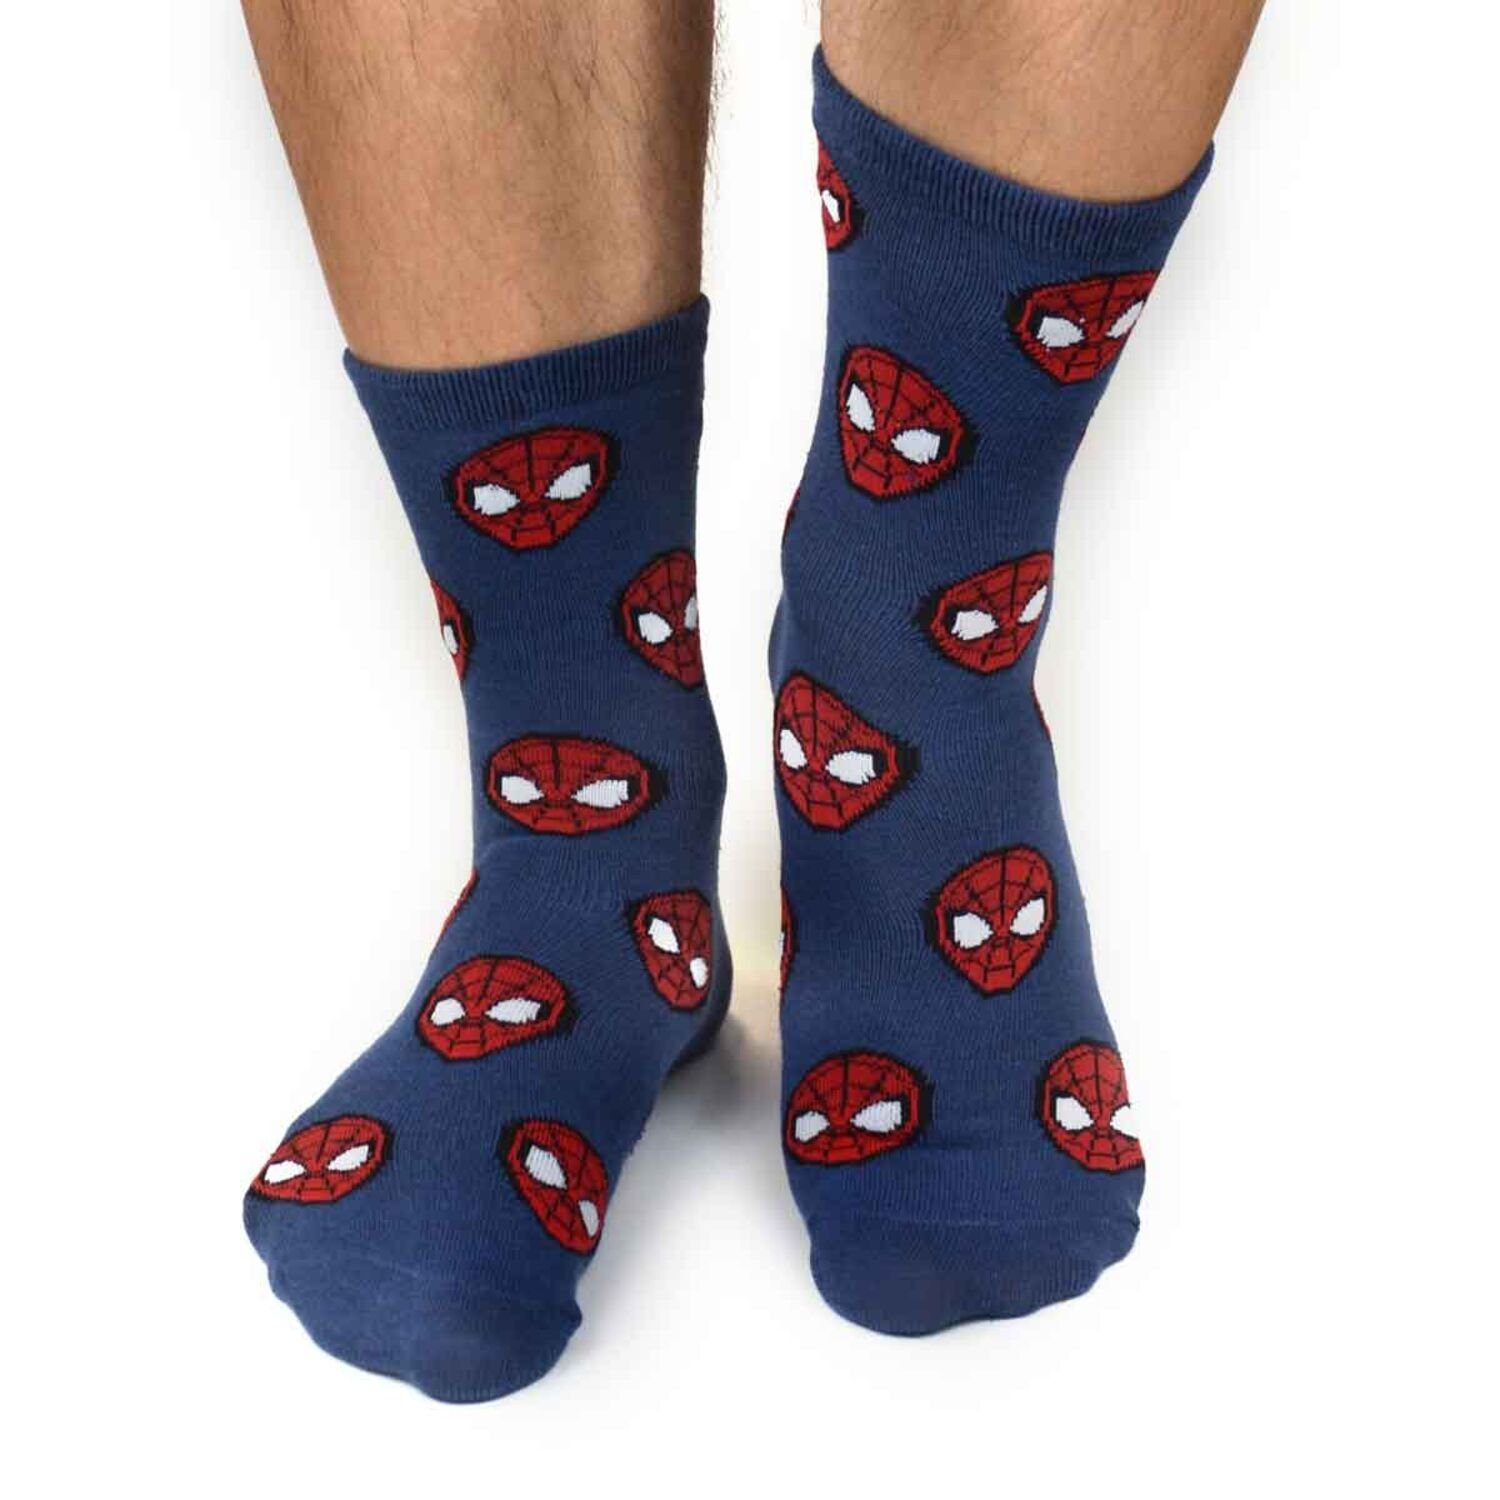 MM Strümpfe Socken Motiv Spiderman